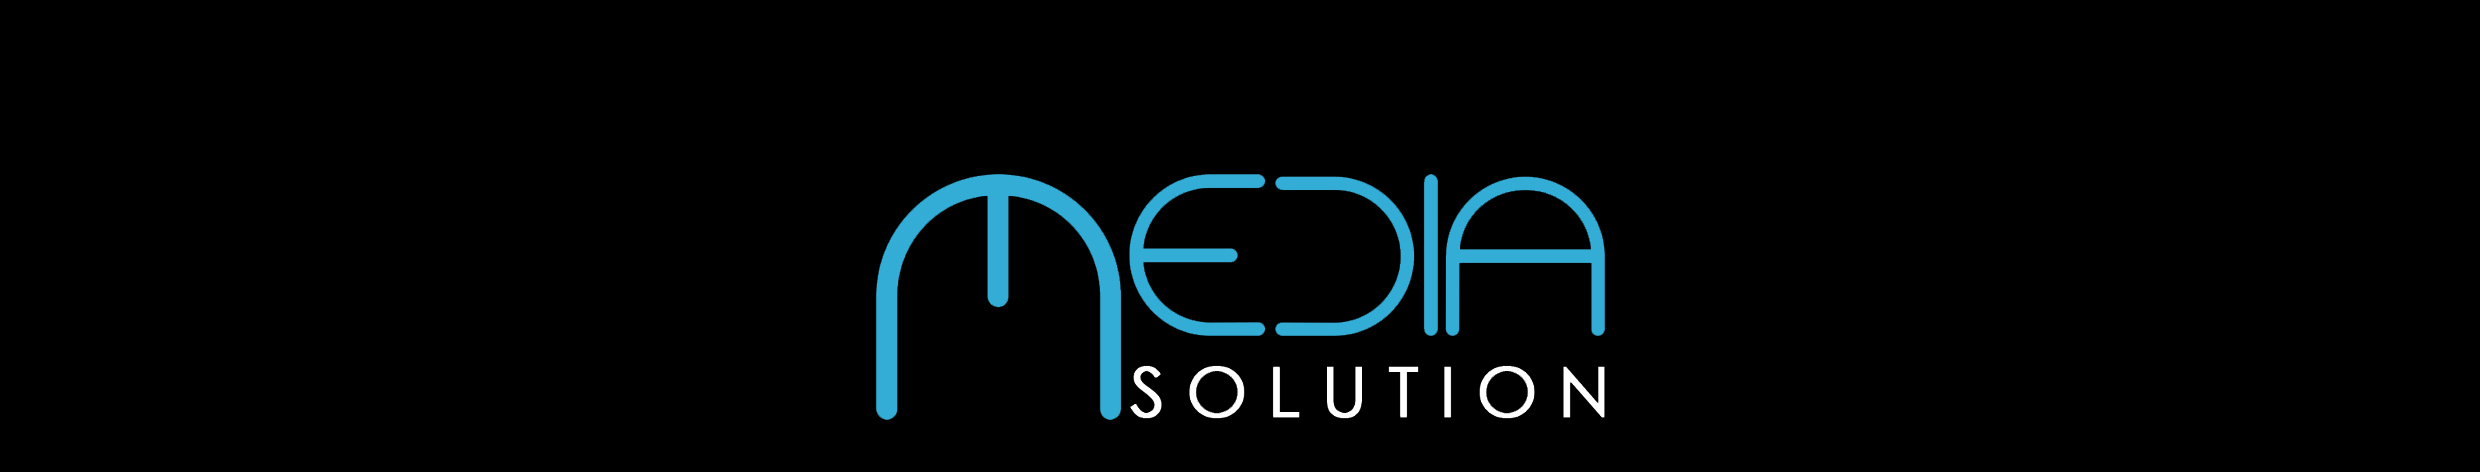 MediaSolution - Honlapkészítés, webdesign, online marketing, facebook, google adwords - logo